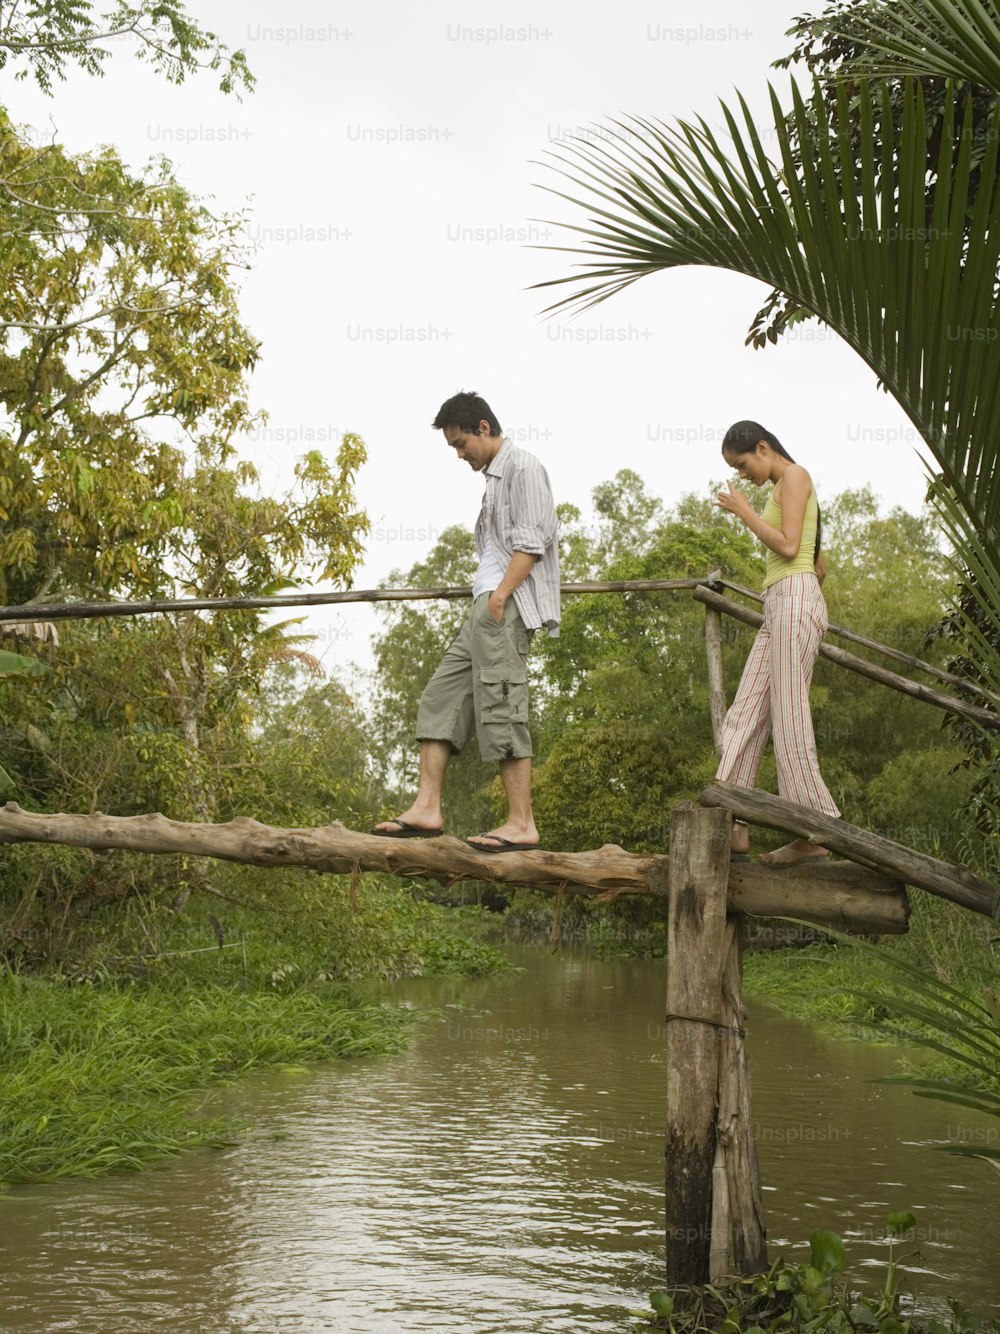 한 남자와 한 여자가 강 위의 나무 다리를 건너고 있다